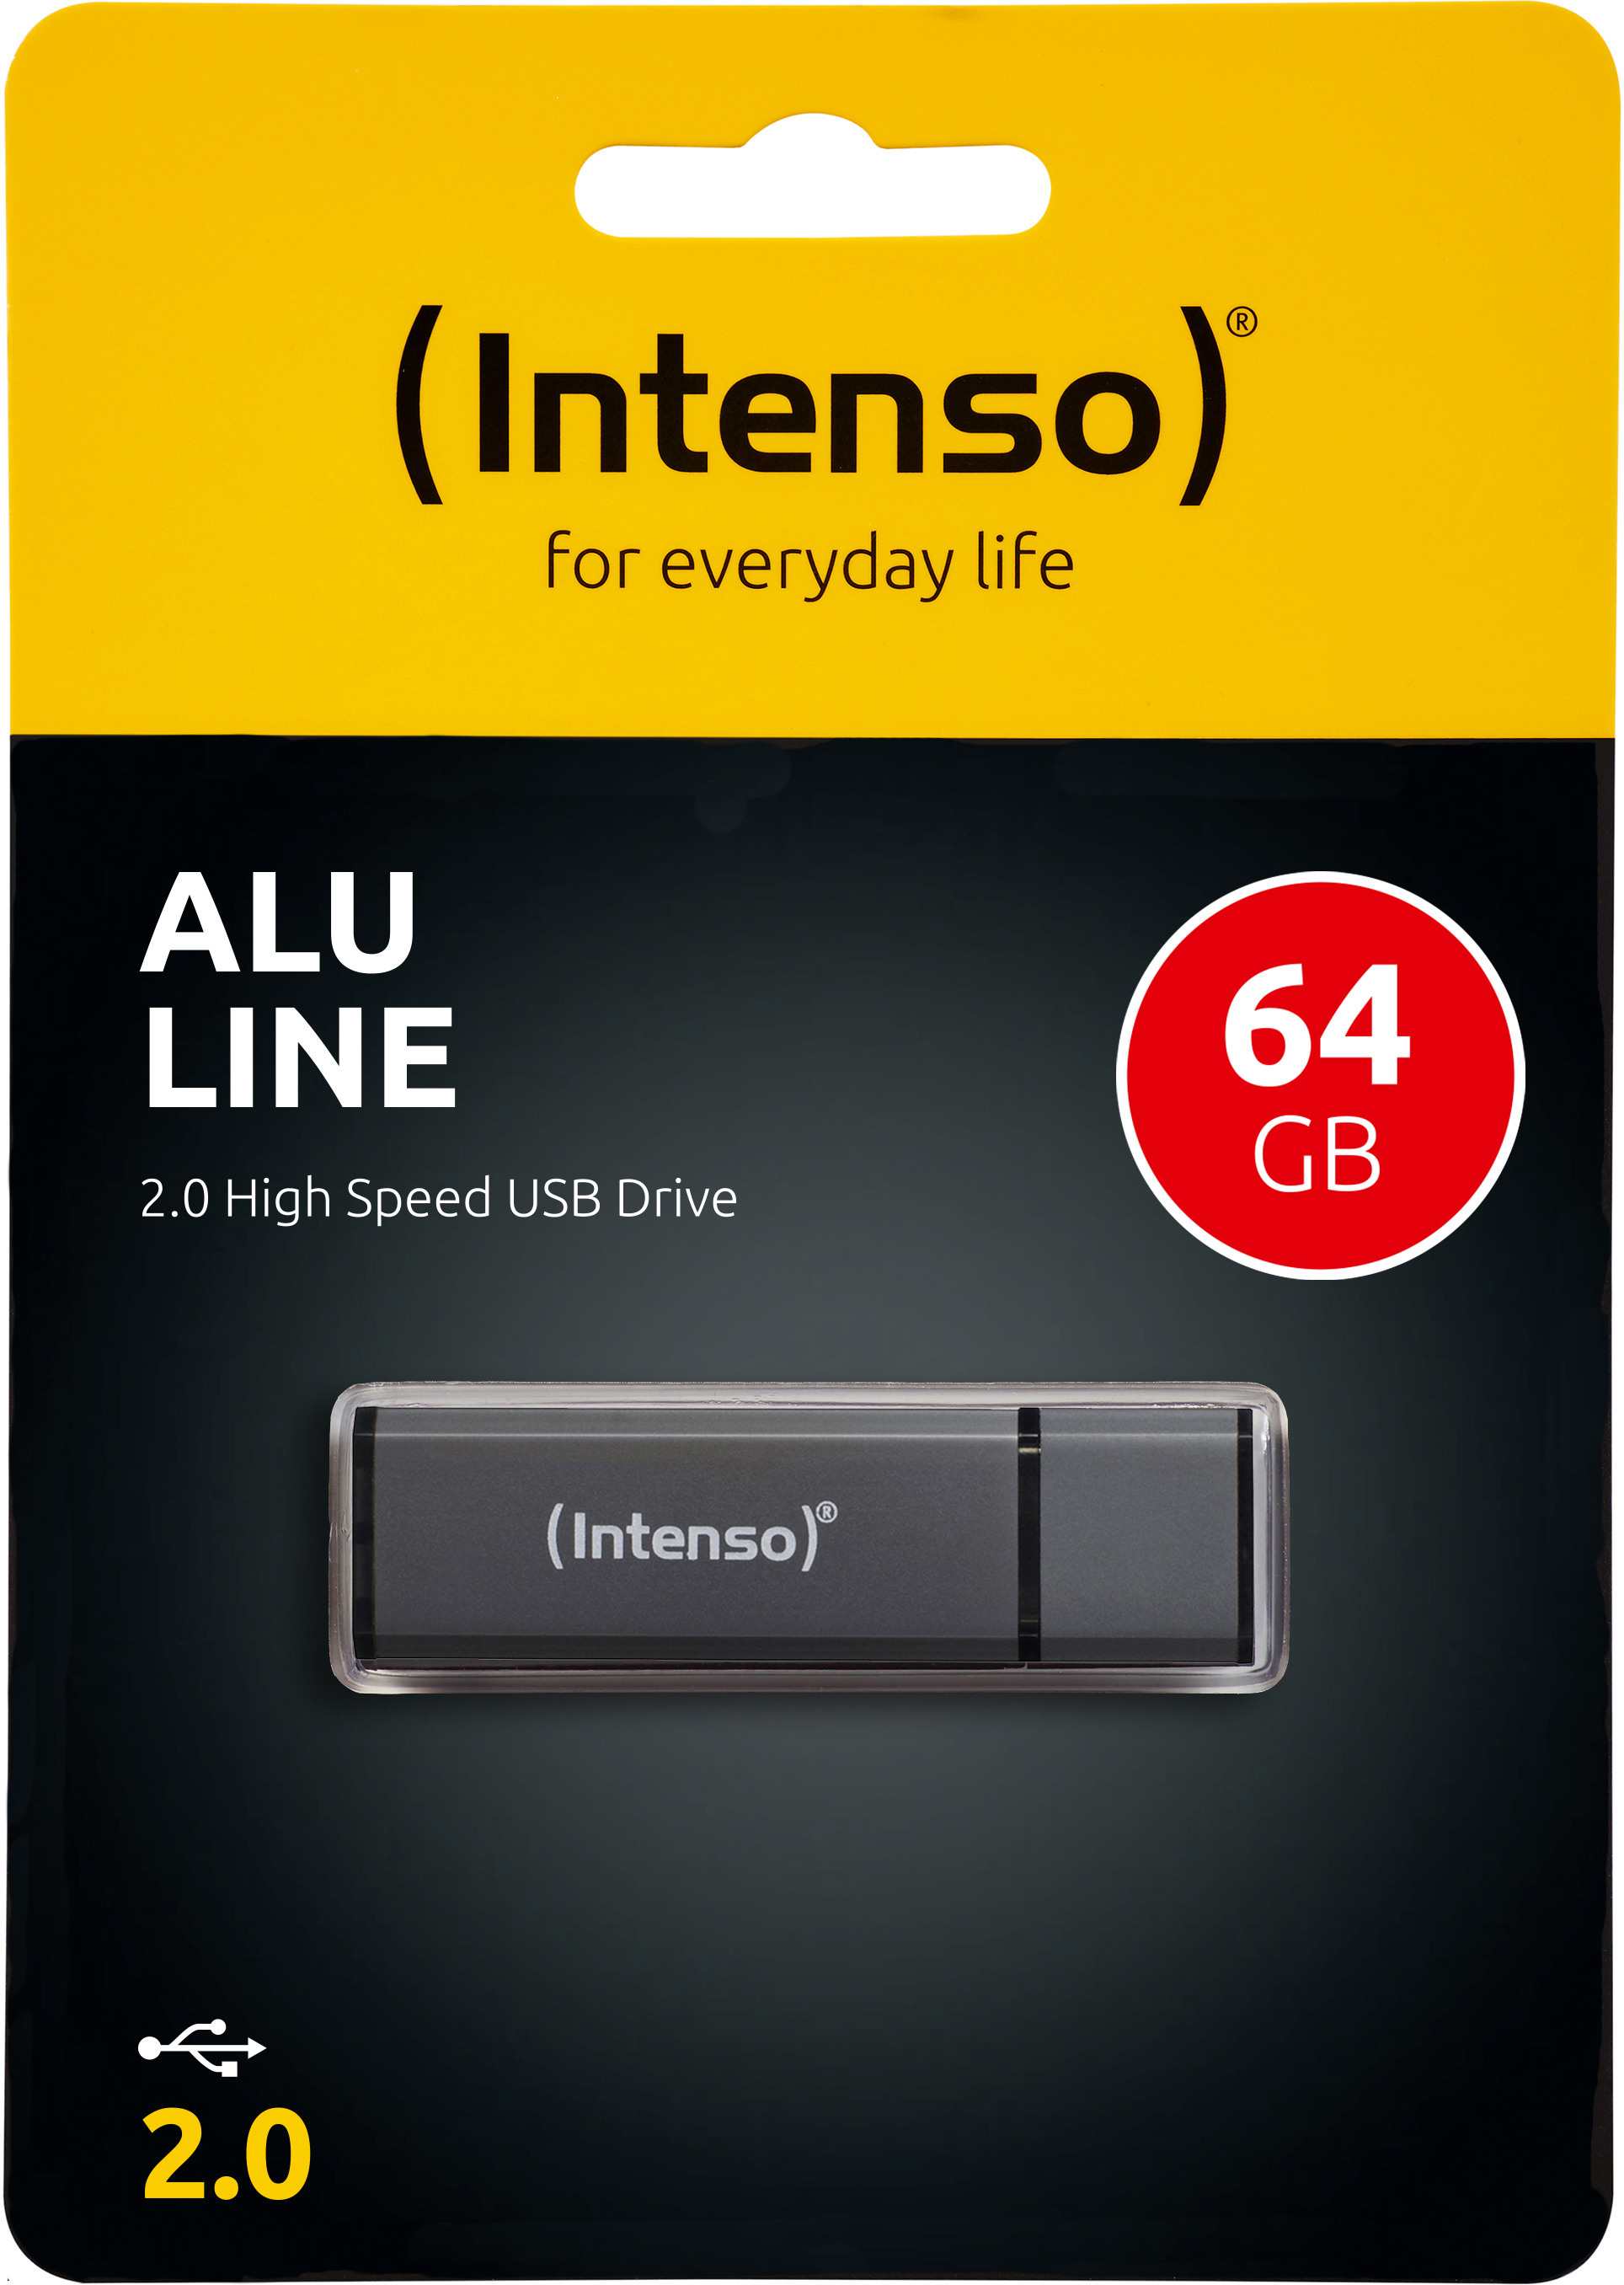 INTENSO USB Stick Alu Line 64GB 3521491 USB 2.0 antracite